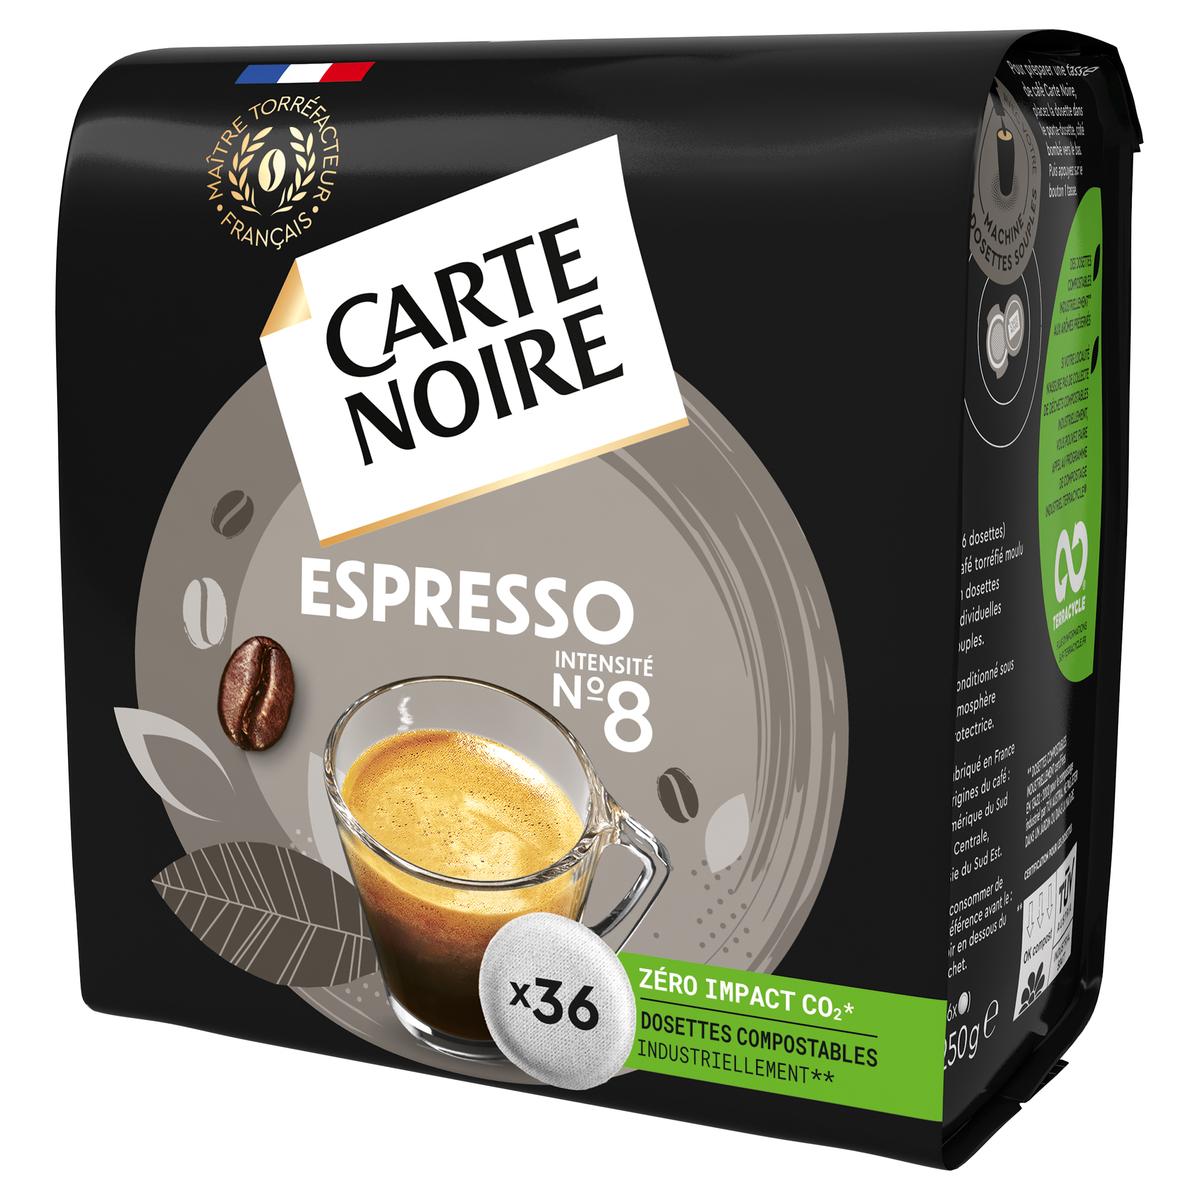 CARTE NOIRE Dosettes de café classique intensité 5 compatibles